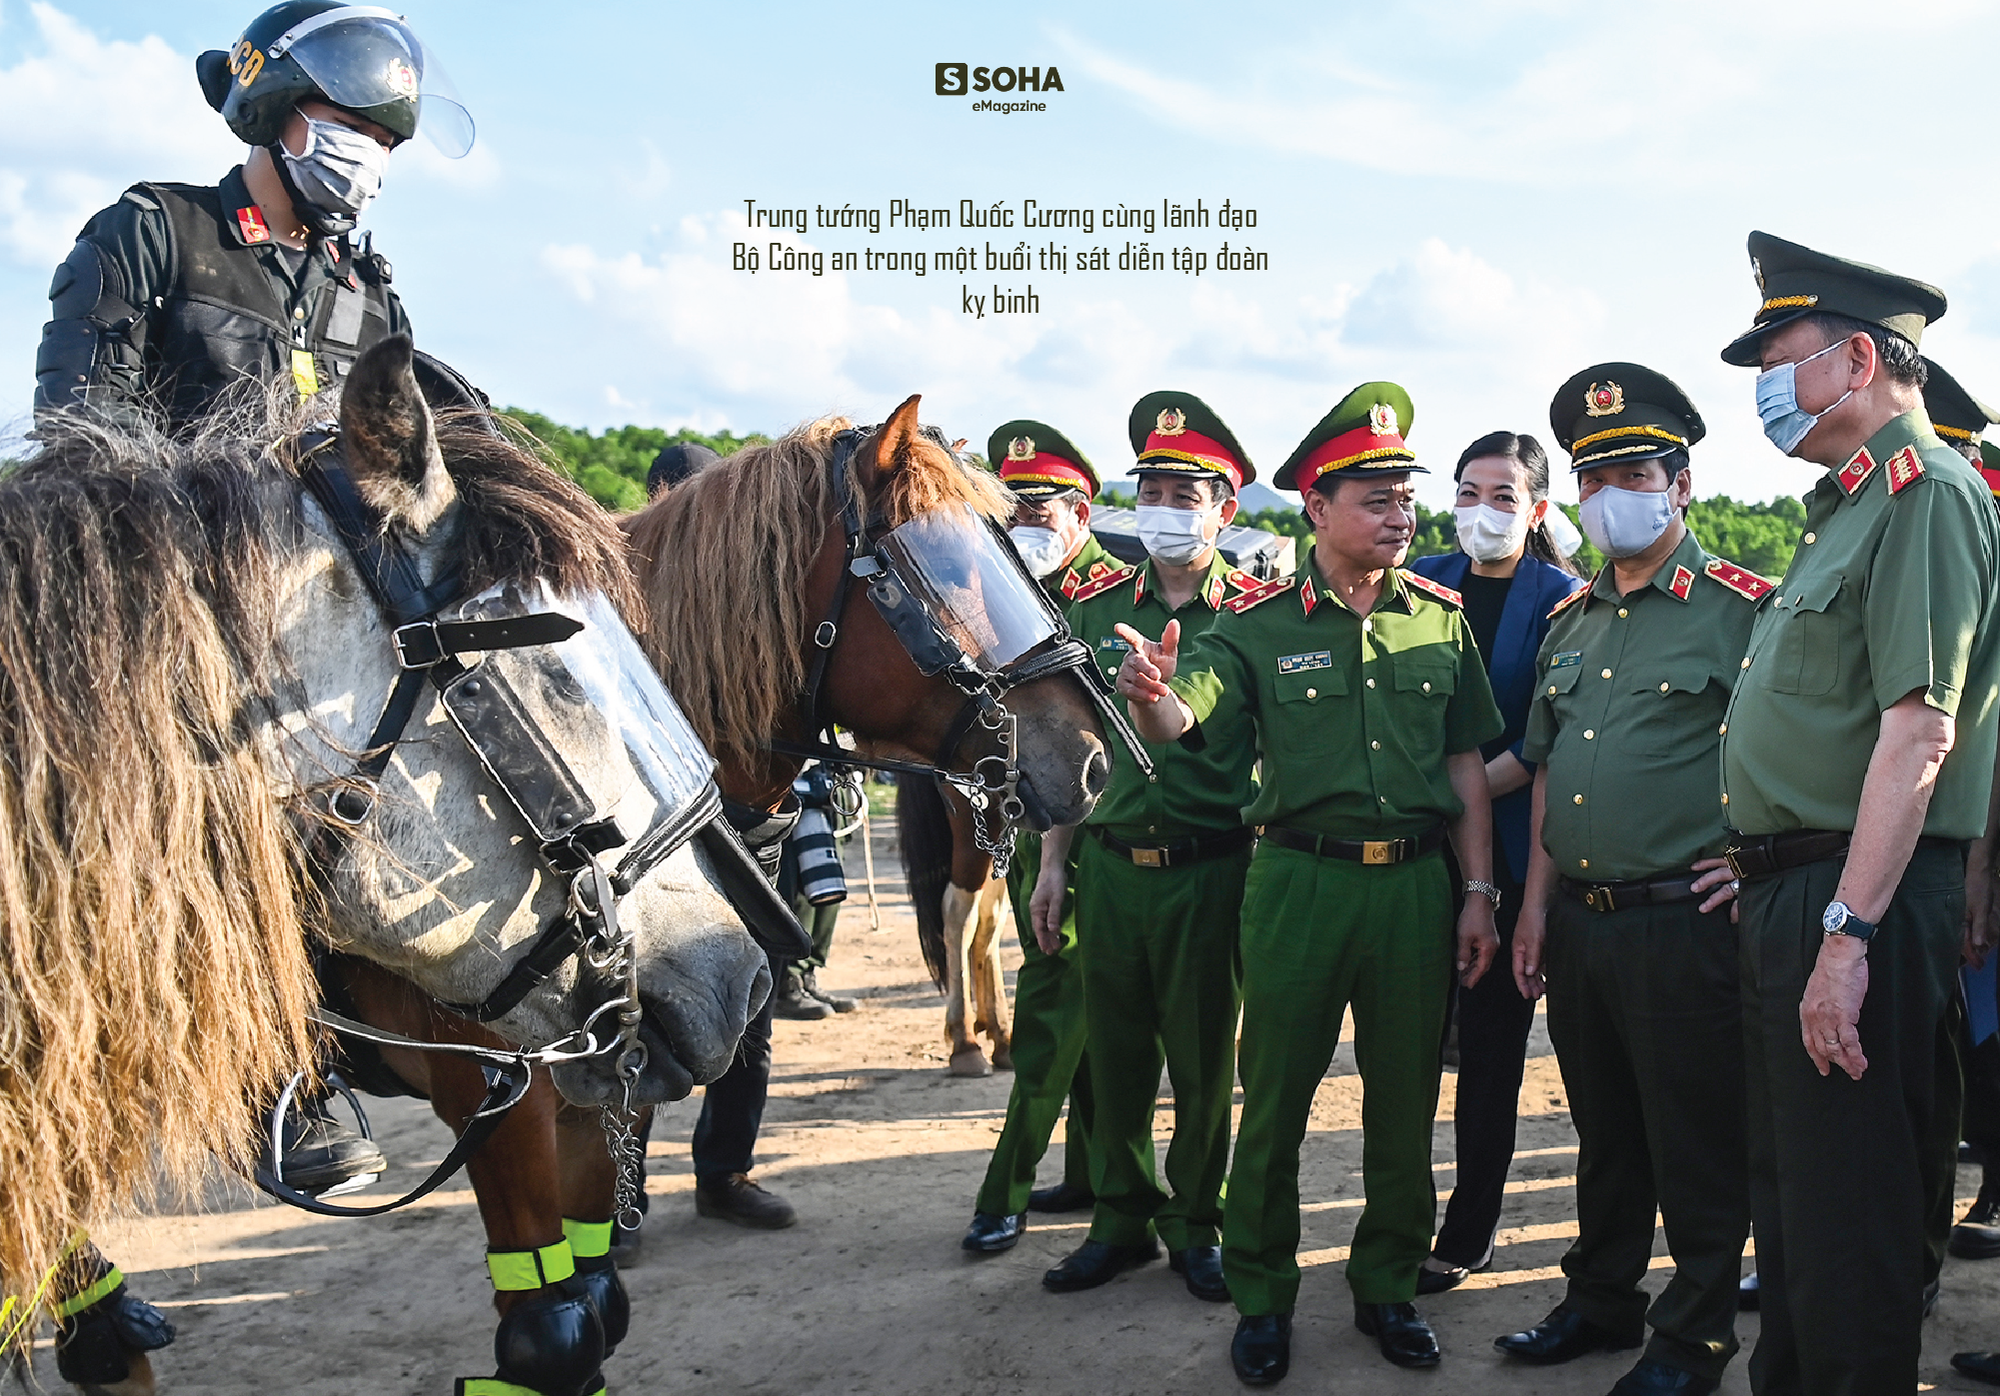 Trung tướng Phạm Quốc Cương: “Cảnh sát cơ động sẽ được trang bị máy bay, tàu thủy” - Ảnh 12.